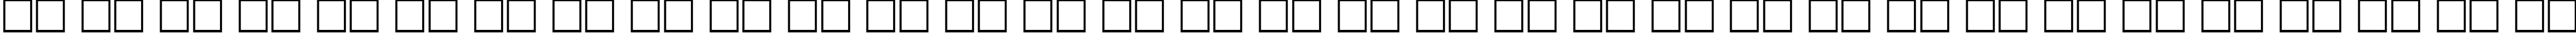 Пример написания русского алфавита шрифтом PentaBold